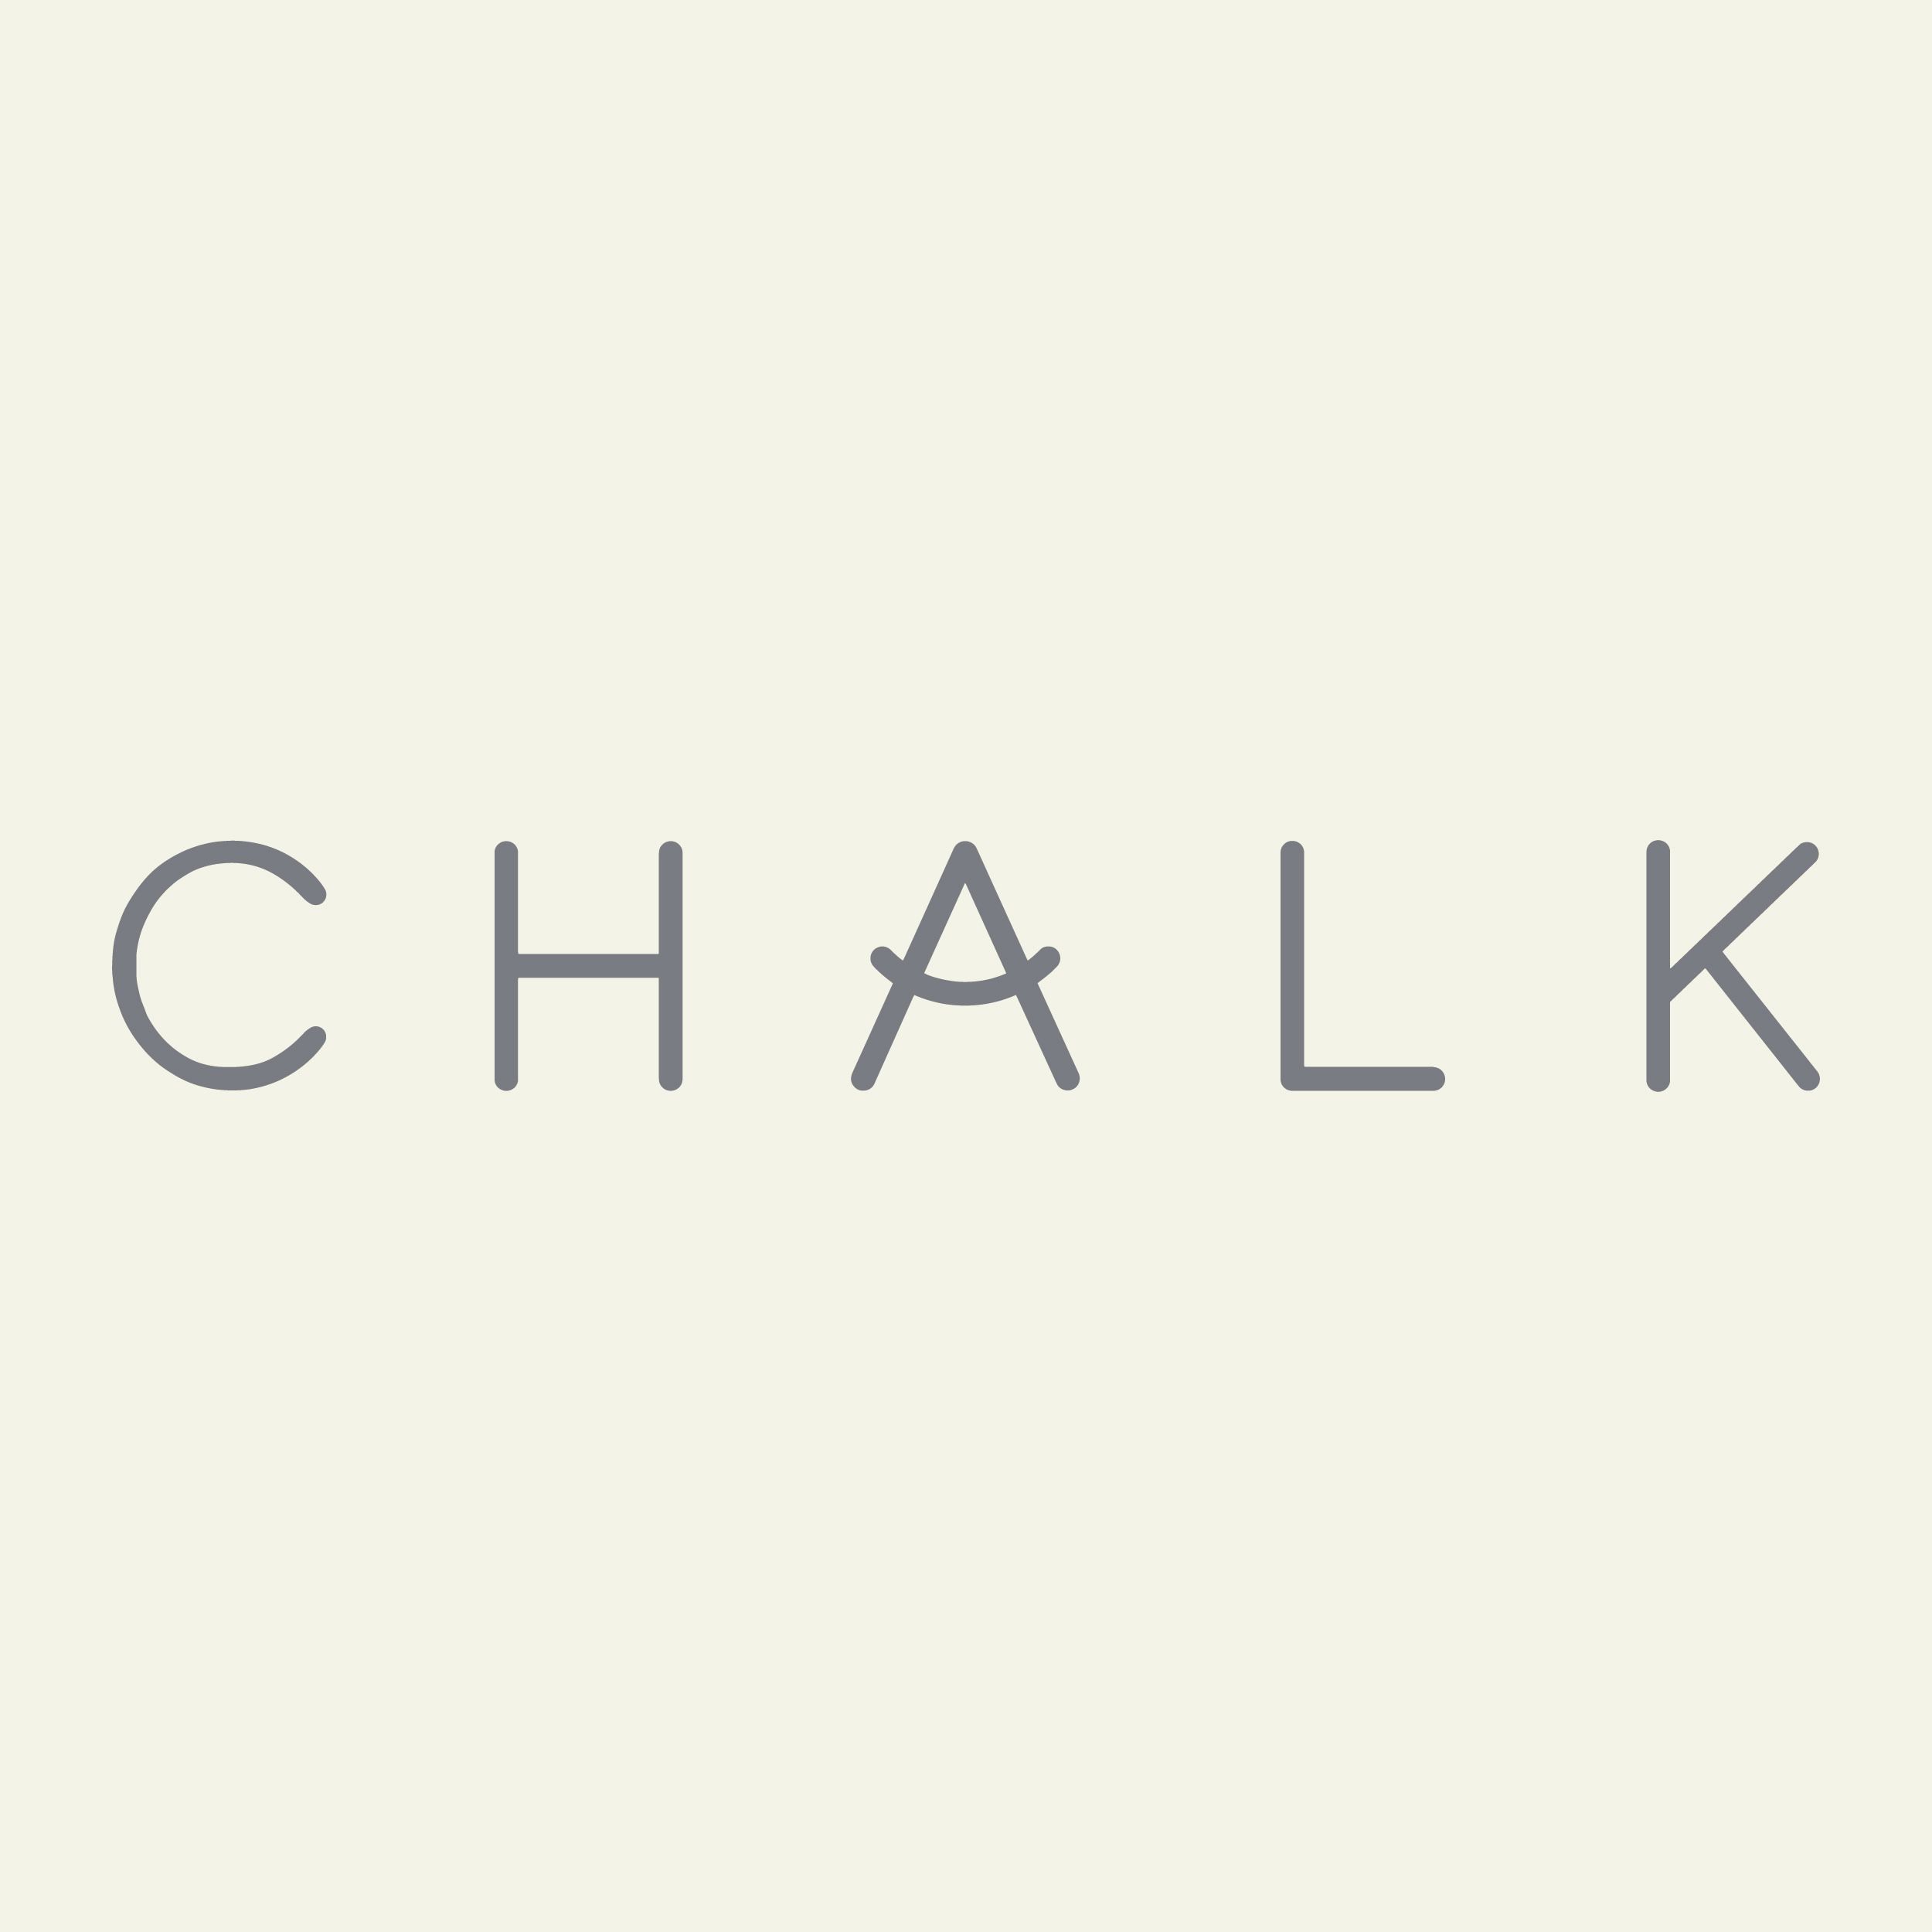 CHALK UK Ltd